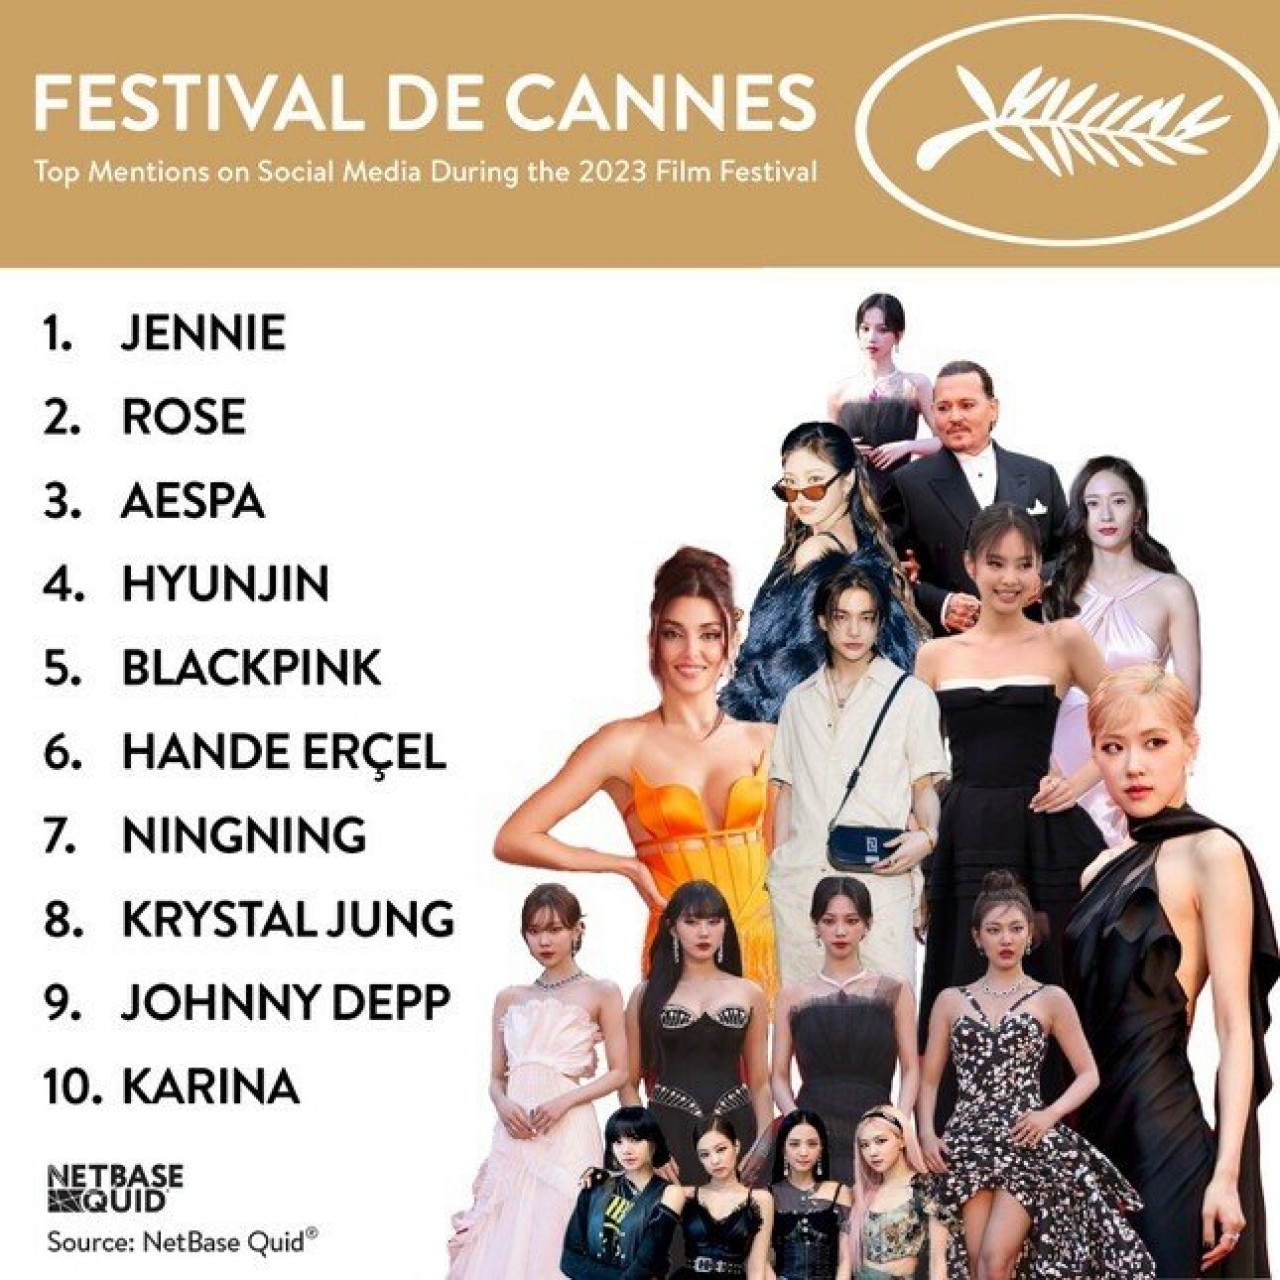 Bắt tay với Jennie (BlackPink), Chanel bỏ túi hơn 615 tỷ đồng ở Cannes 2023 2